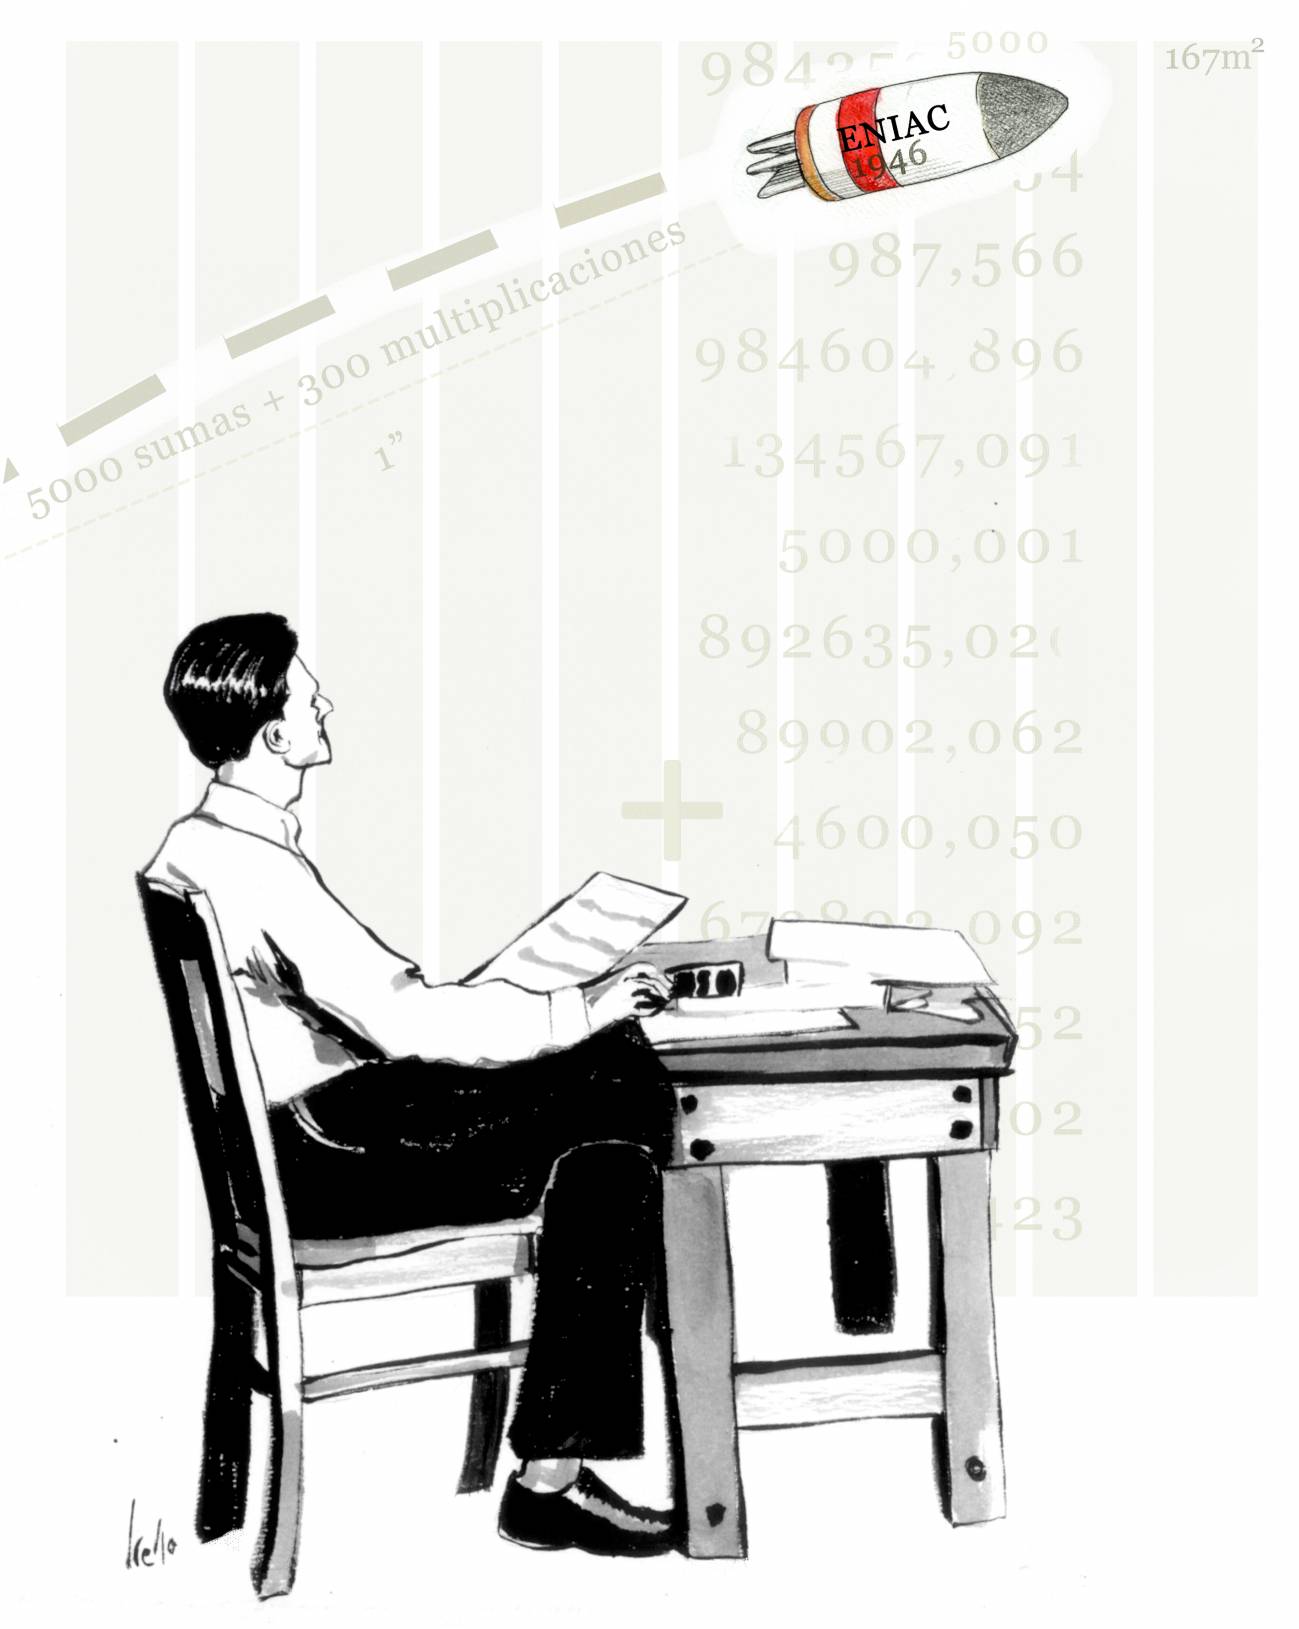 El 15 de febrero de 1946 se presenta ENIAC, la primera computadora eléctrica